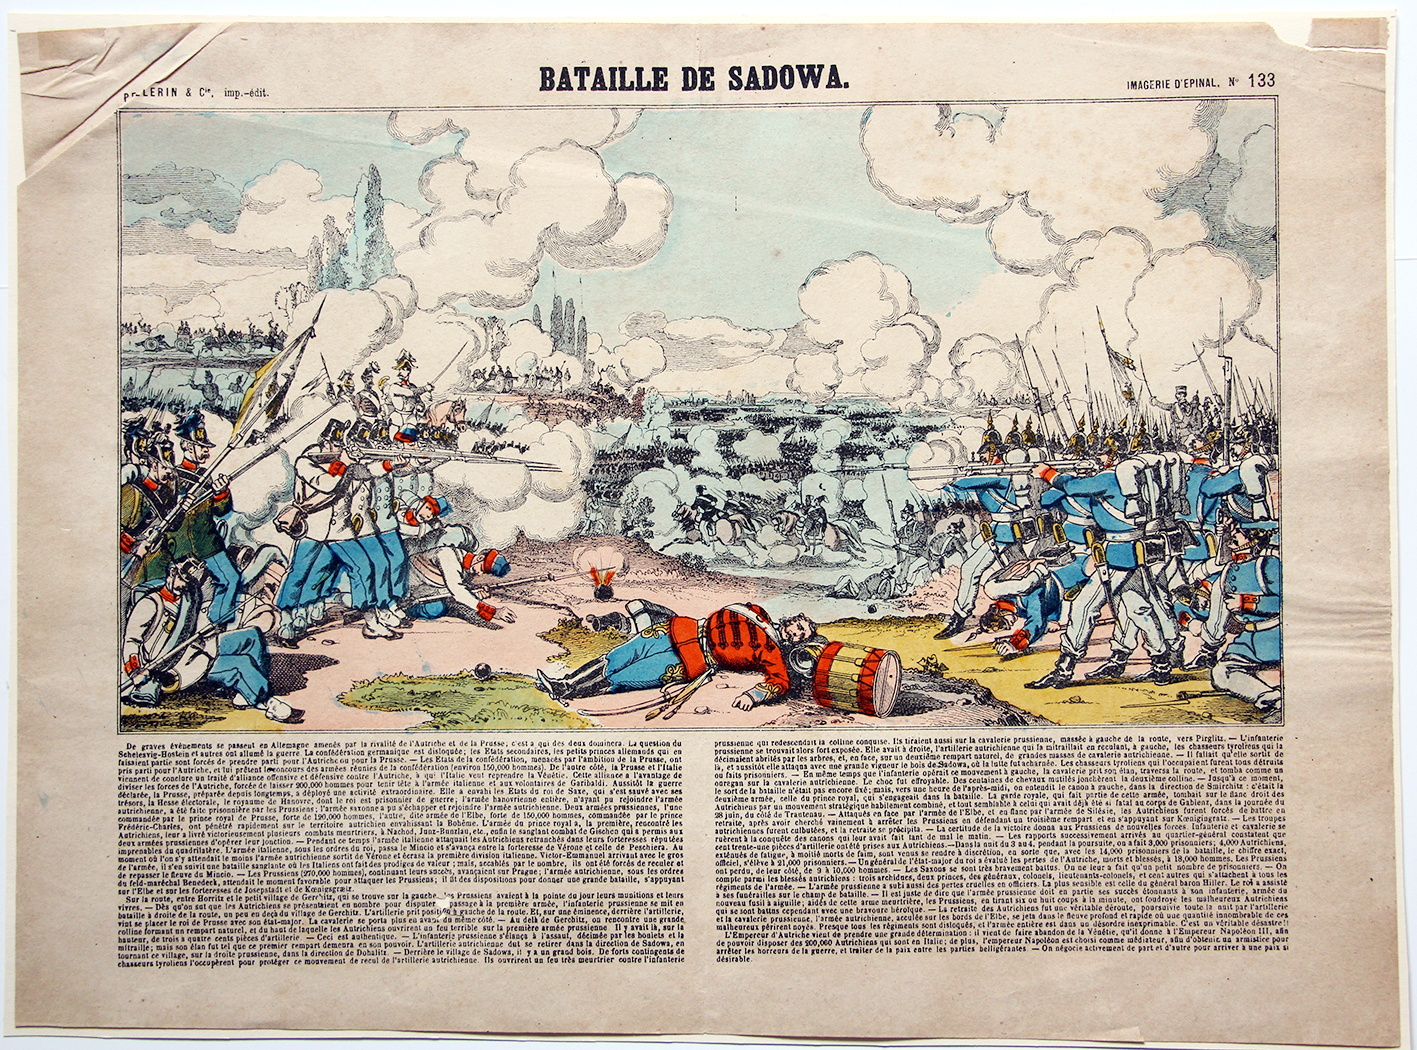 Planche imagerie Epinal - Bataille de Sadowa - 1866 - Imagerie Populaire - Planche N°133